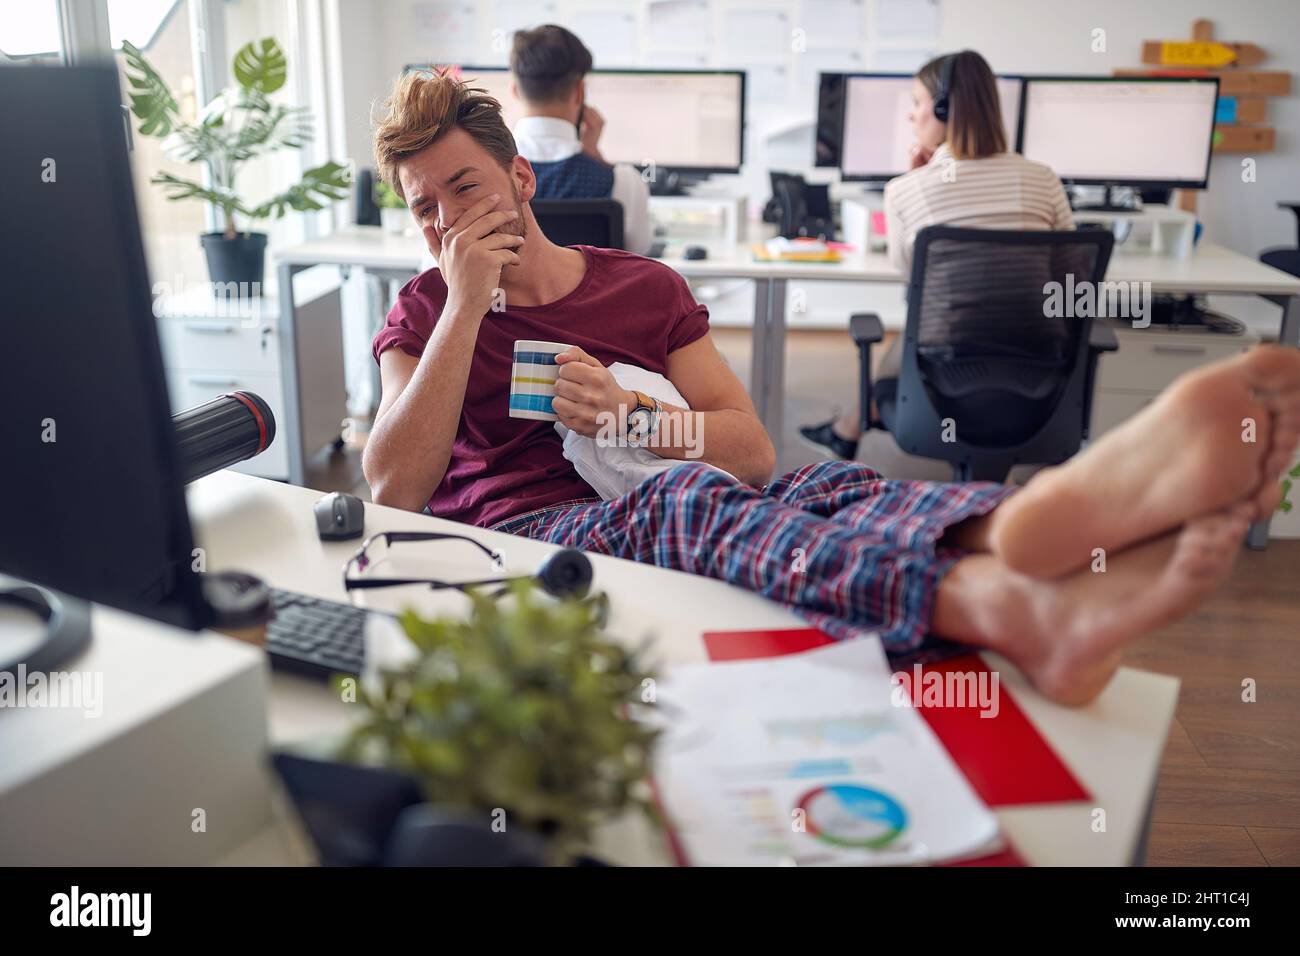 Un jeune homme travaille à la réception tout en étant assis de manière détendue dans une atmosphère agréable au bureau. Employés, travail, bureau Banque D'Images